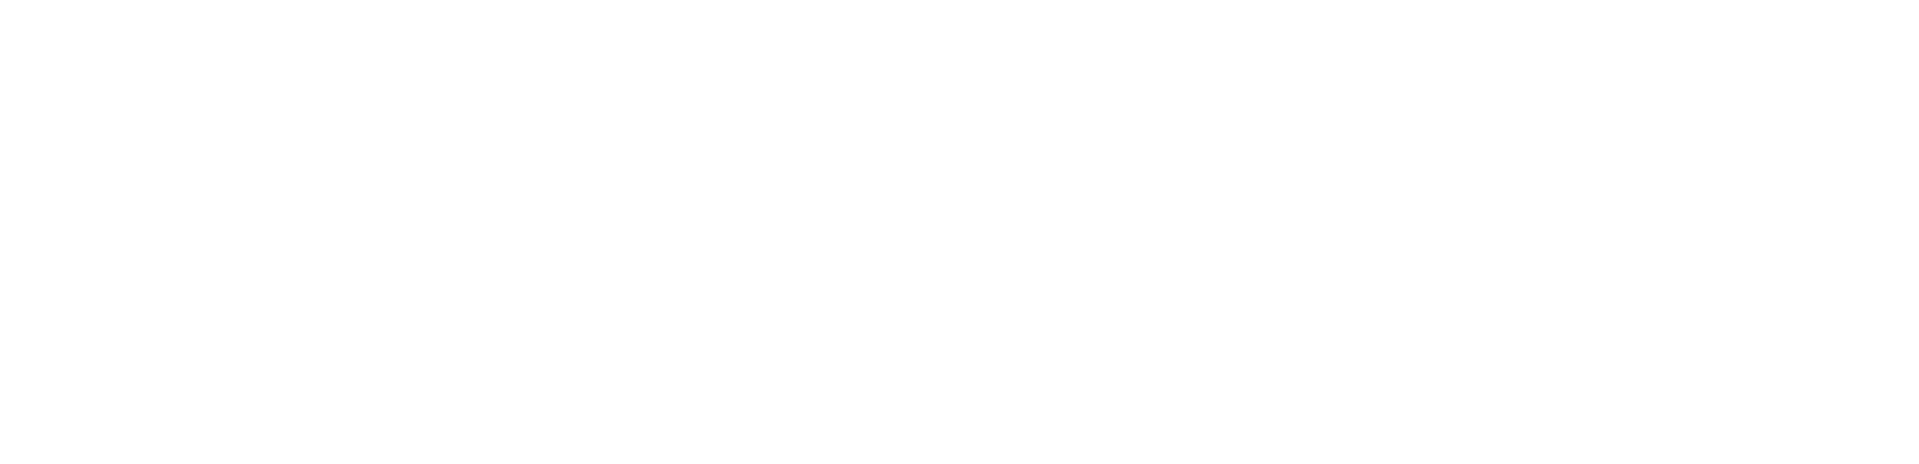 Hycgan_Logo_White Horizontal v2